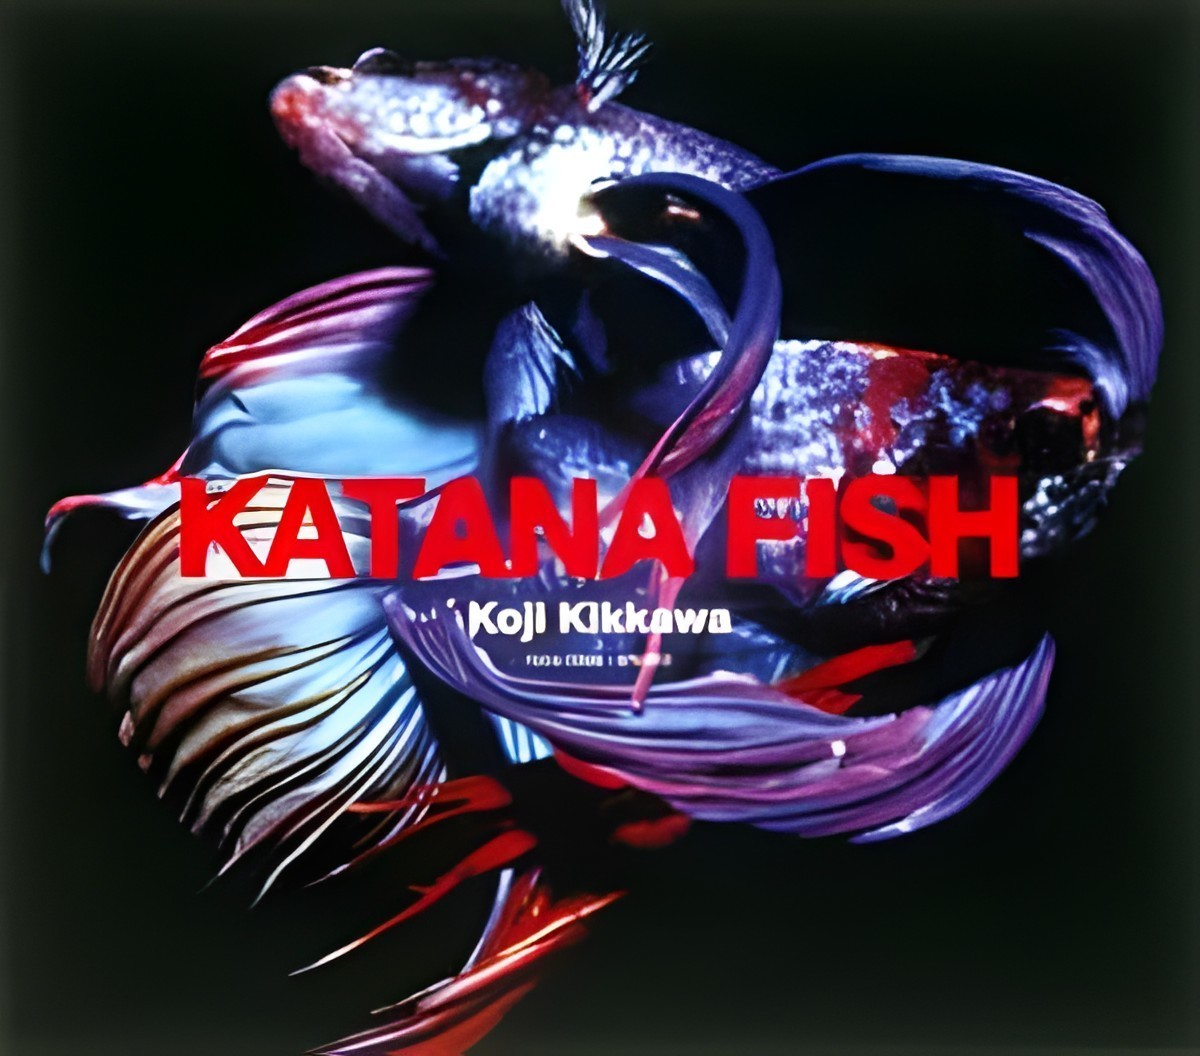 9991_katana_fish